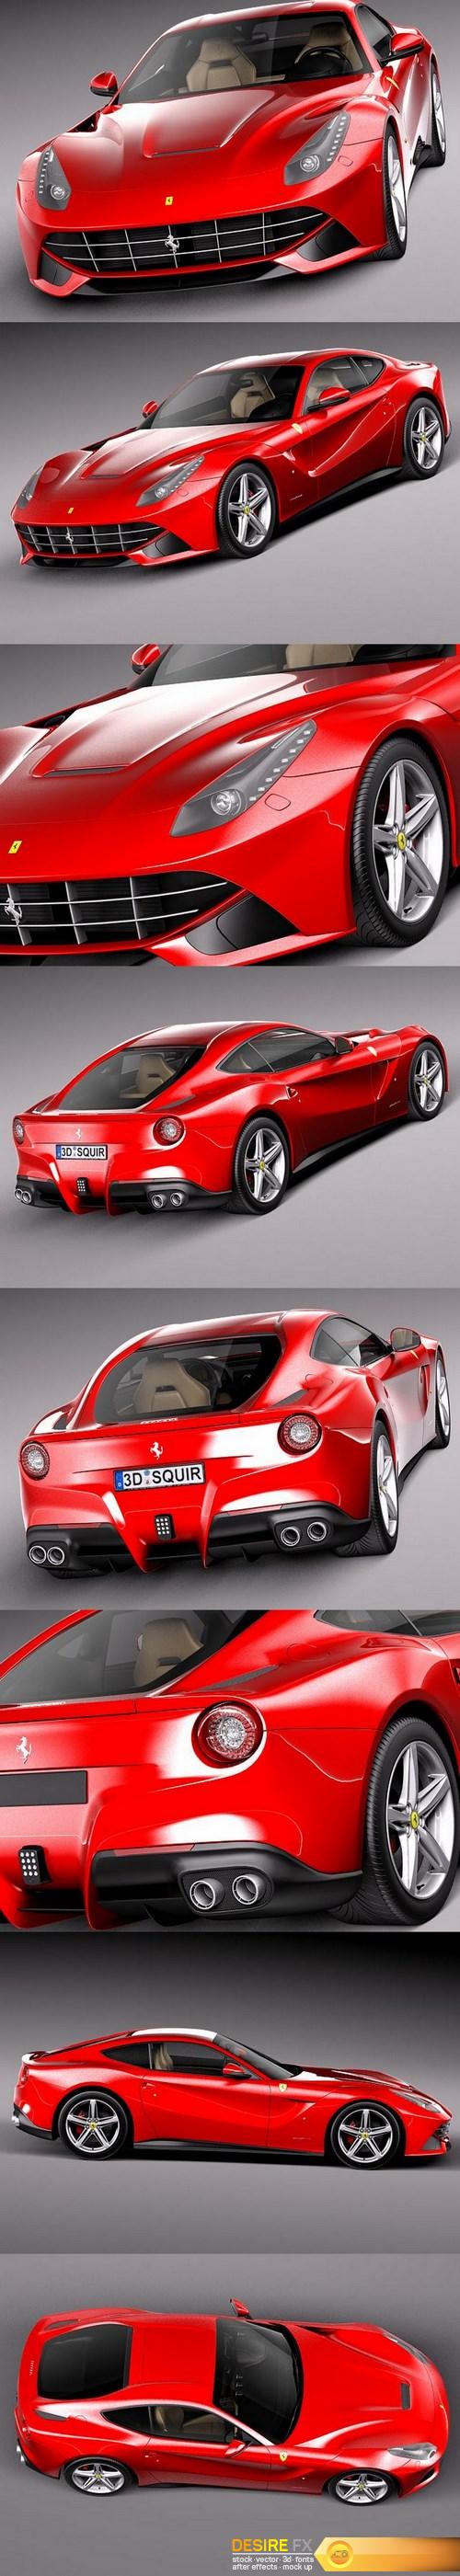 Ferrari F12 Berlinetta 2013-2016 3D Model